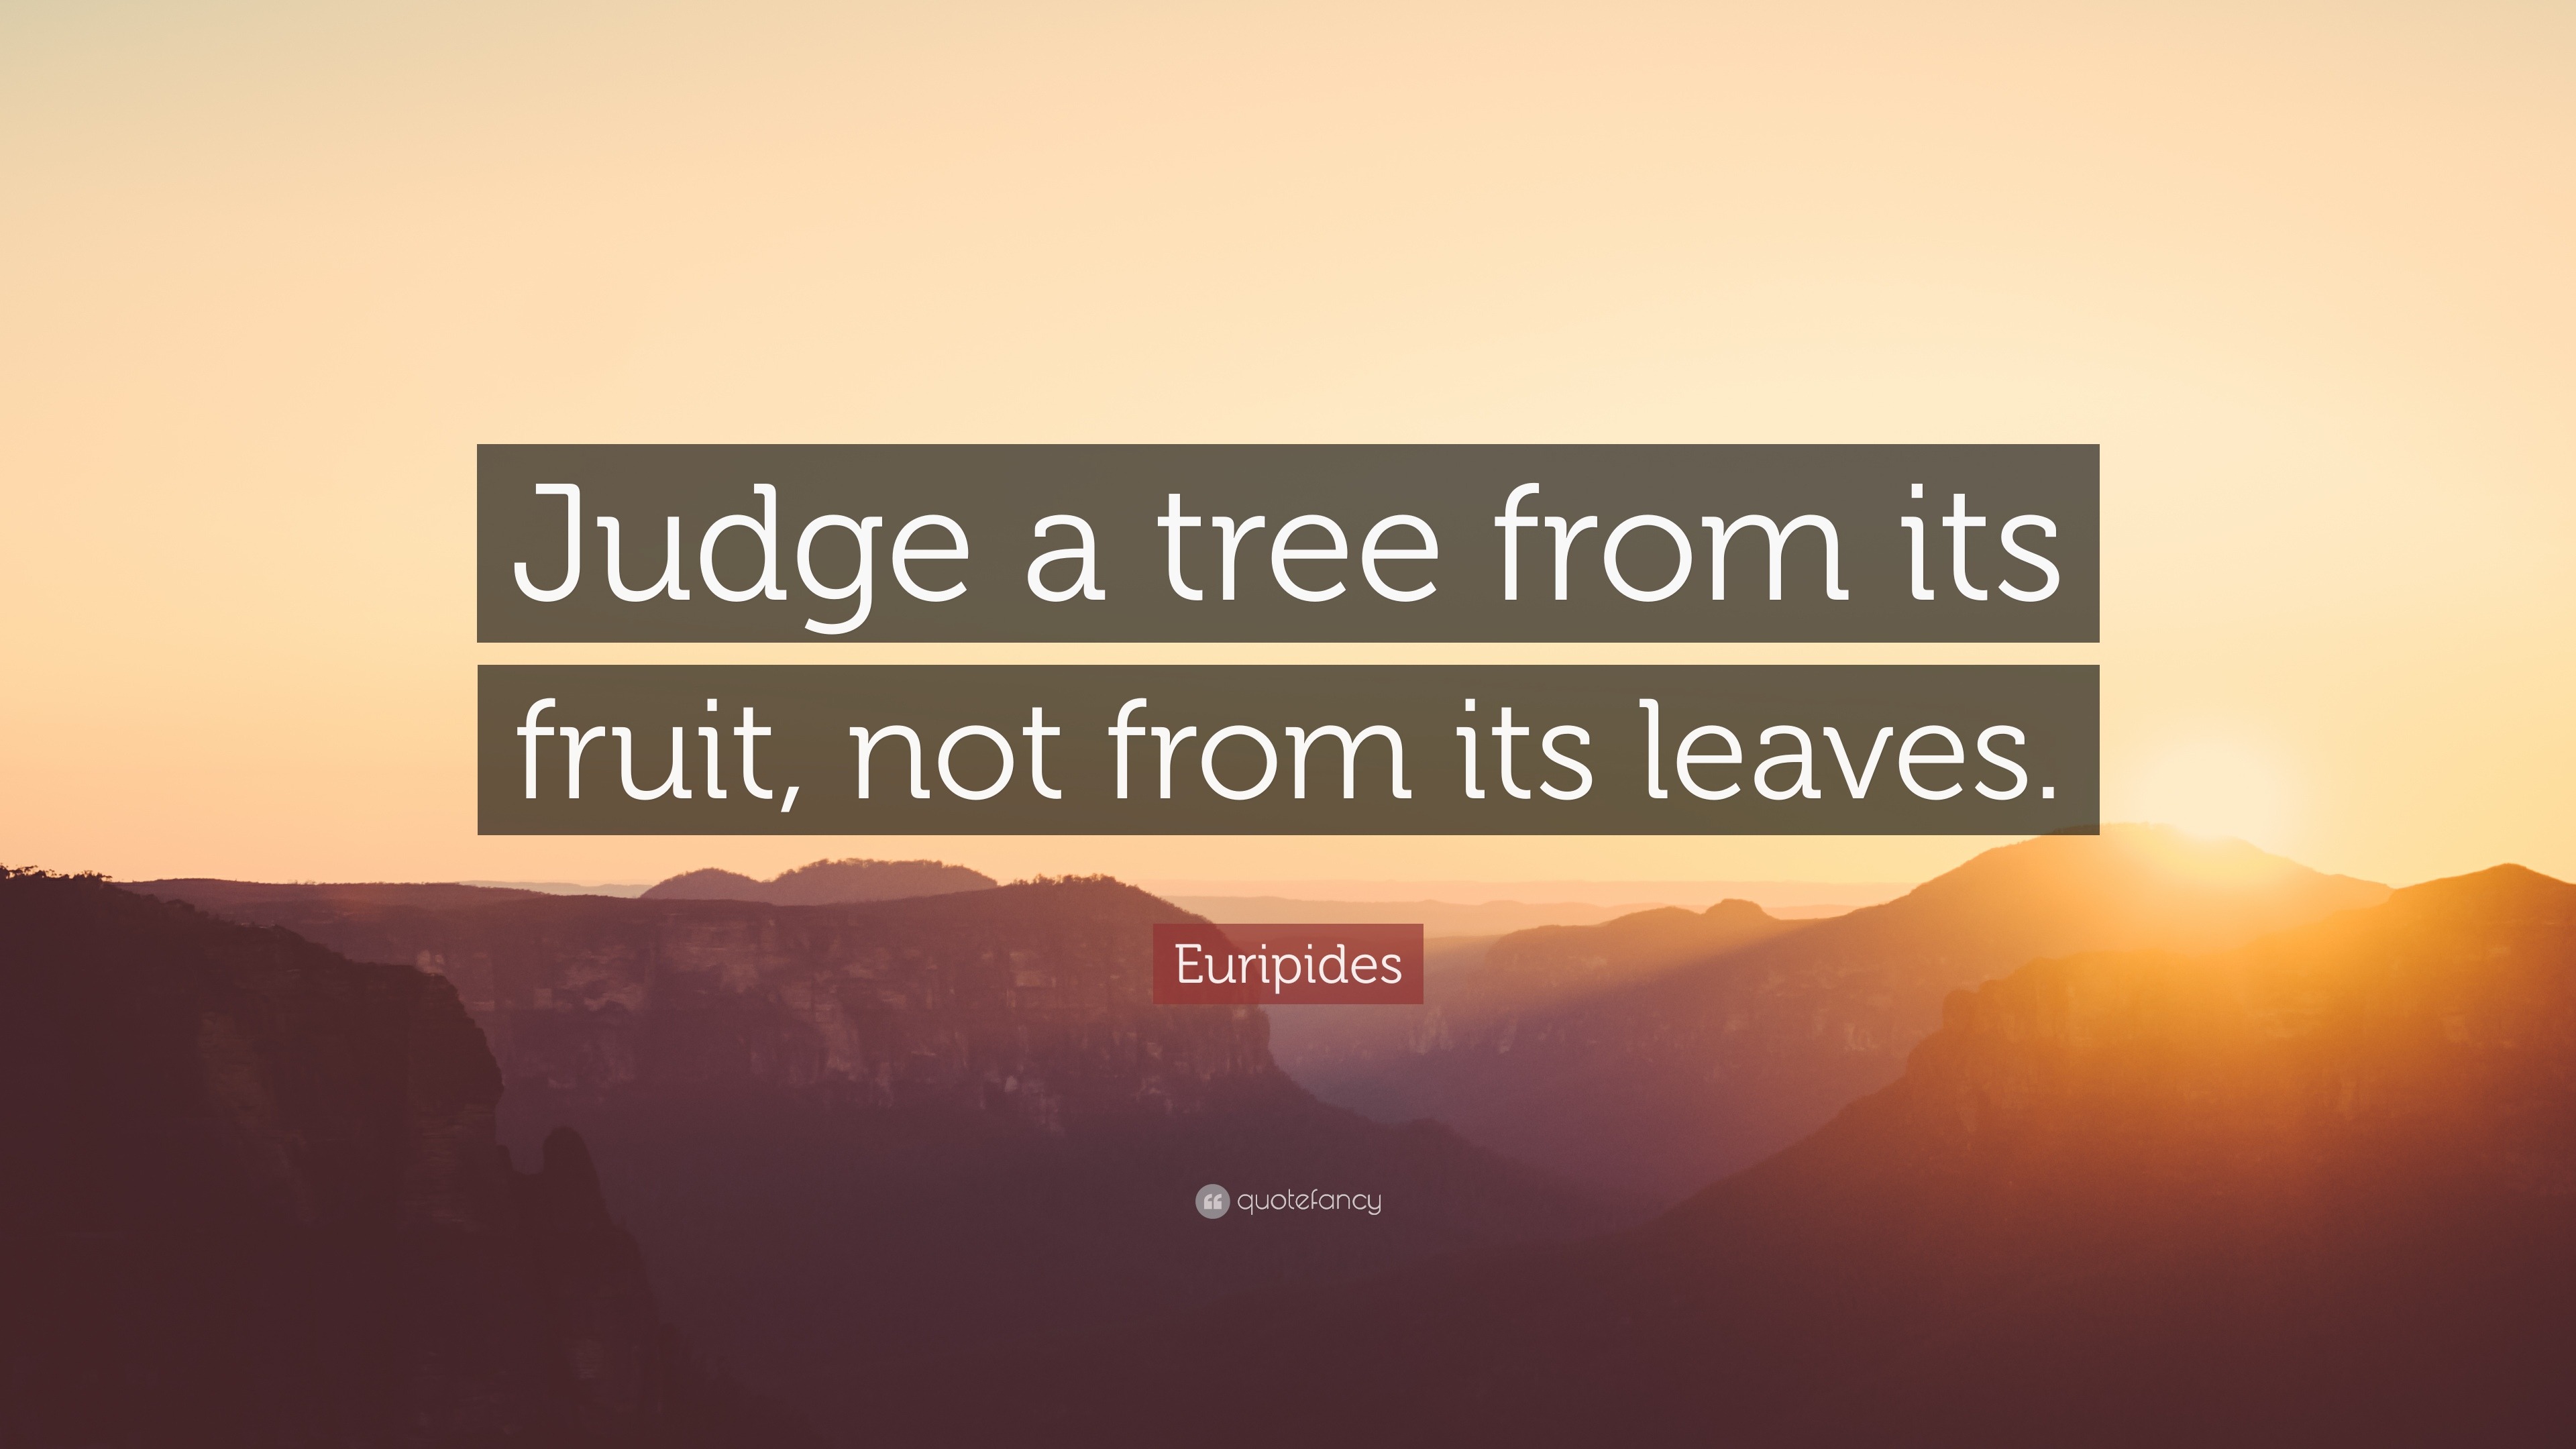 أنا أحكم على الشجرة من ثمارها